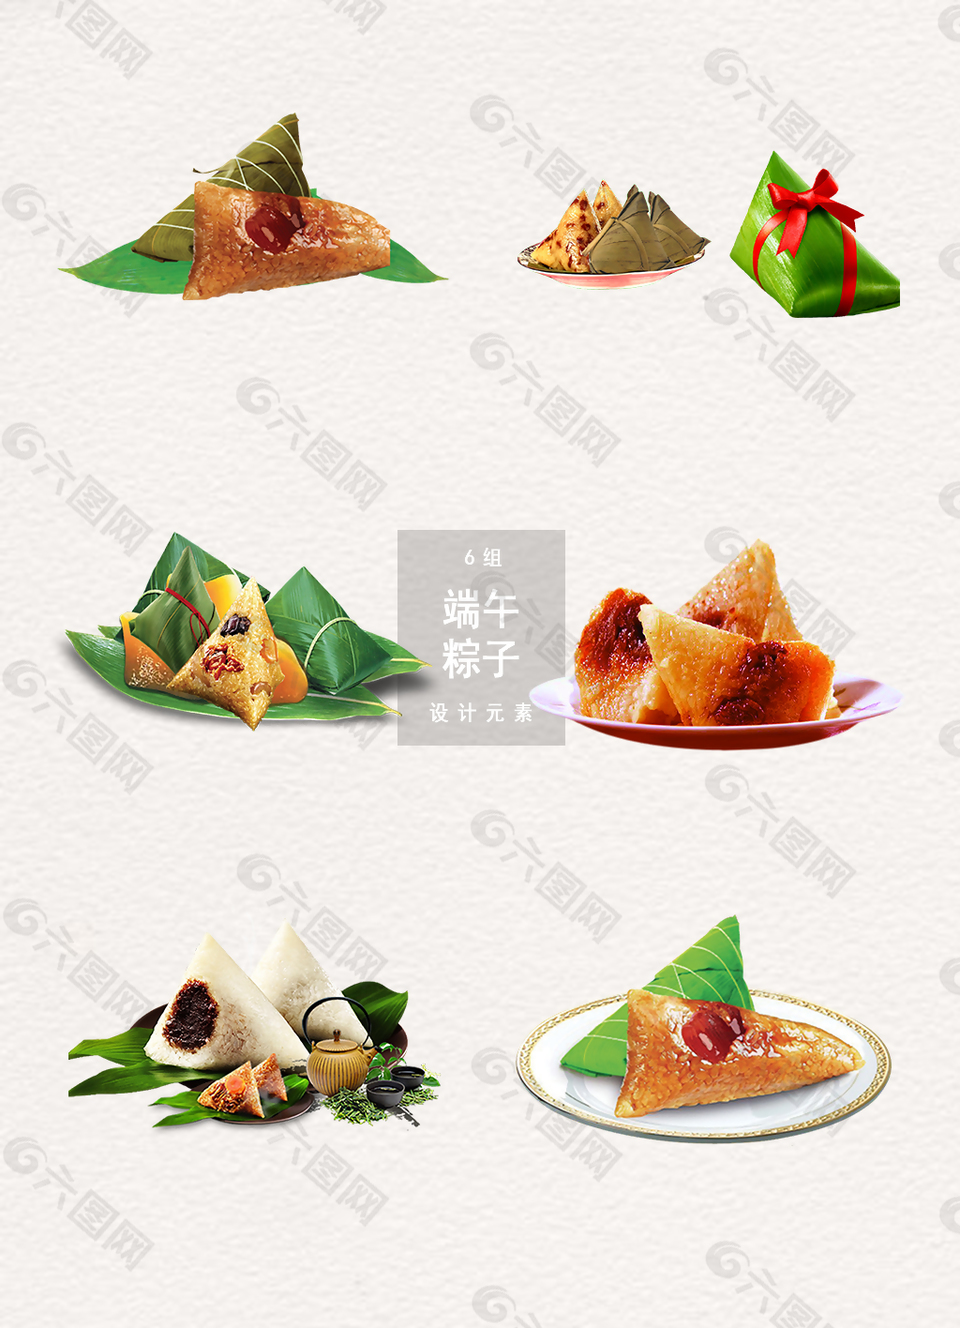 端午节粽子展示图素材